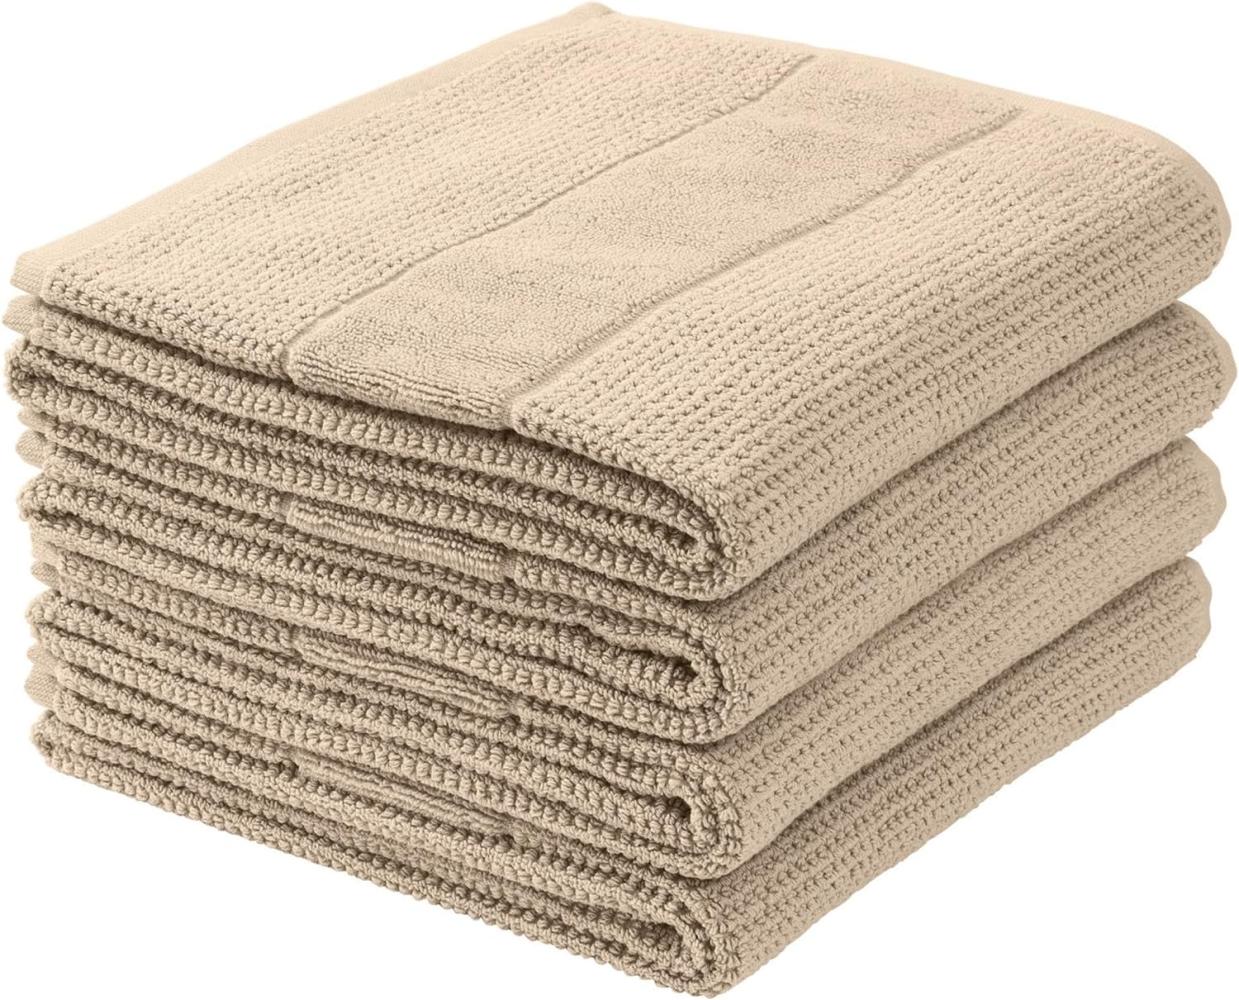 Schiesser Handtücher Turin im 4er Set aus 100% Baumwolle, nachhaltig und fair produziert, Farbe:Sand, Größe:50 cm x 100 cm Bild 1